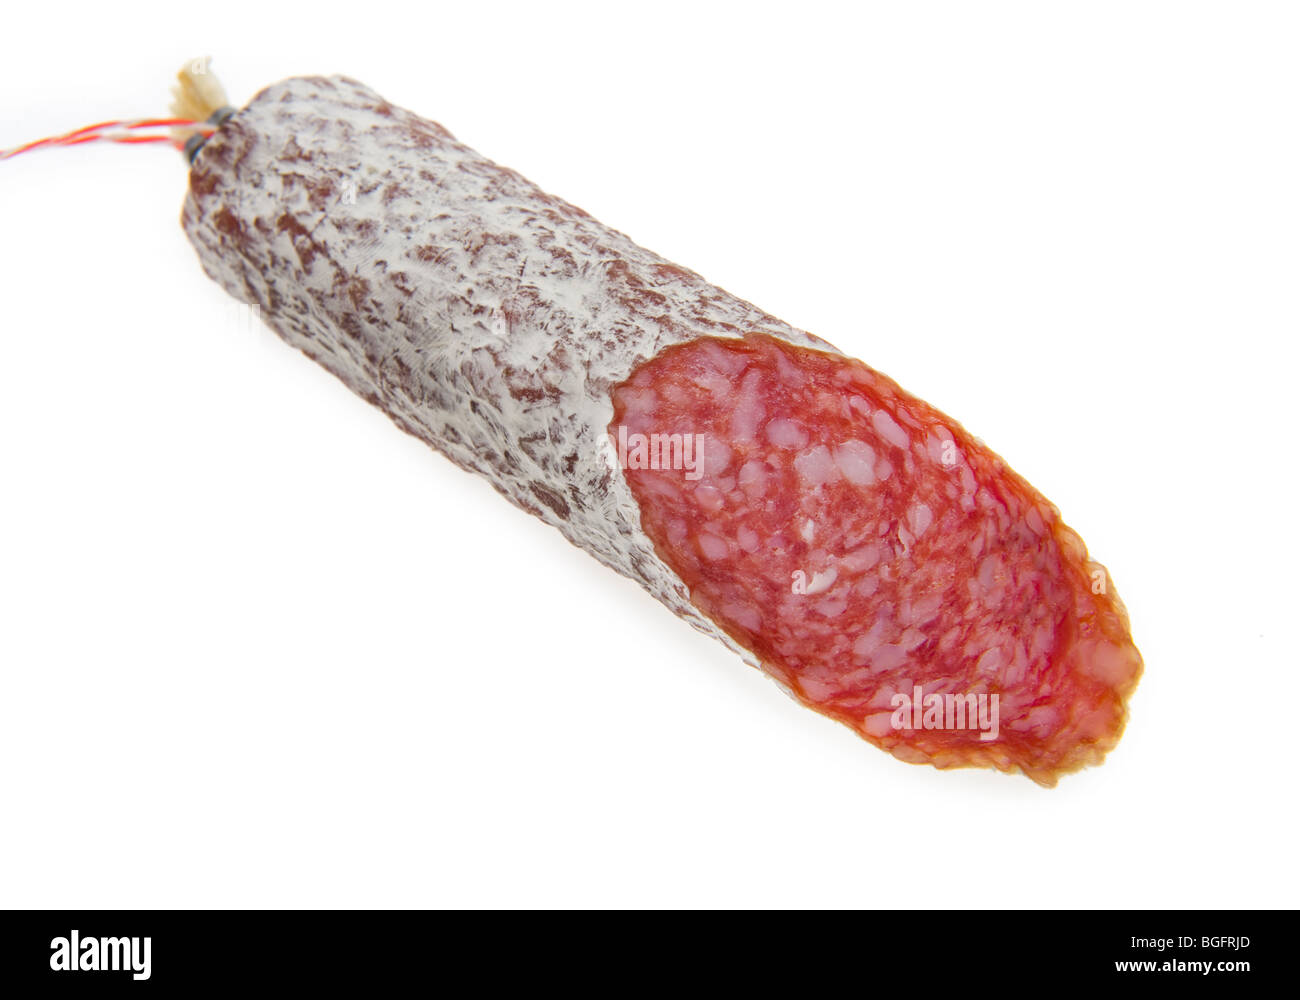 Italie italienne saucisses de porc charcuterie salami salami chorizo sausage espagne côté cuisine, la cuisine, la santé, la santé, la société Banque D'Images